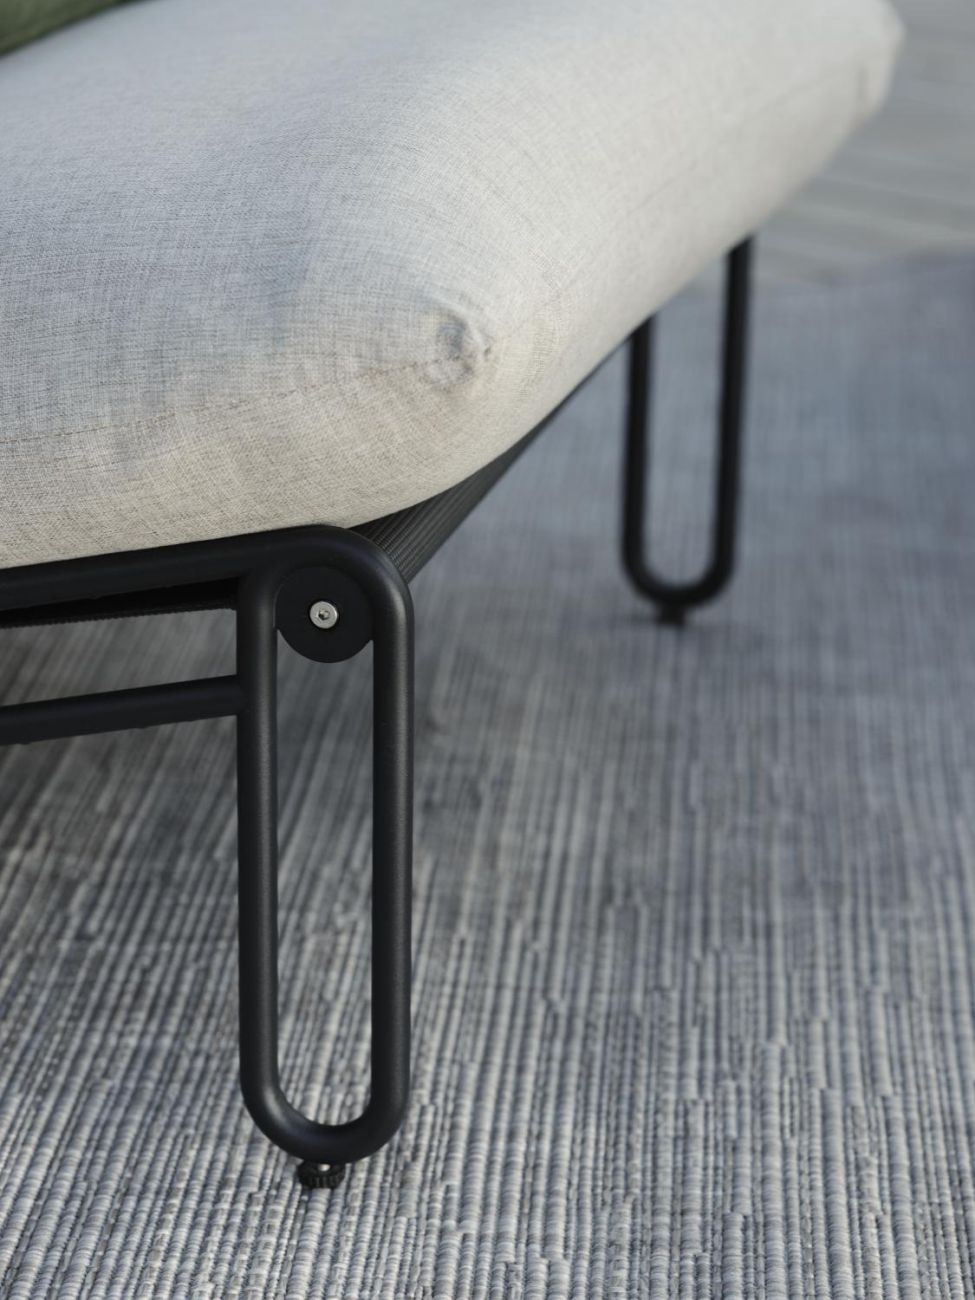 Der Gartensessel Blixt überzeugt mit seinem modernen Design. Gefertigt wurde er aus Metall, welches einen schwarzen Farbton besitzt. Das Gestell ist auch aus Metall und das Sitzkissen hat eine Beige Farbe. Die Sitzhöhe des Sessels beträgt 40 cm.